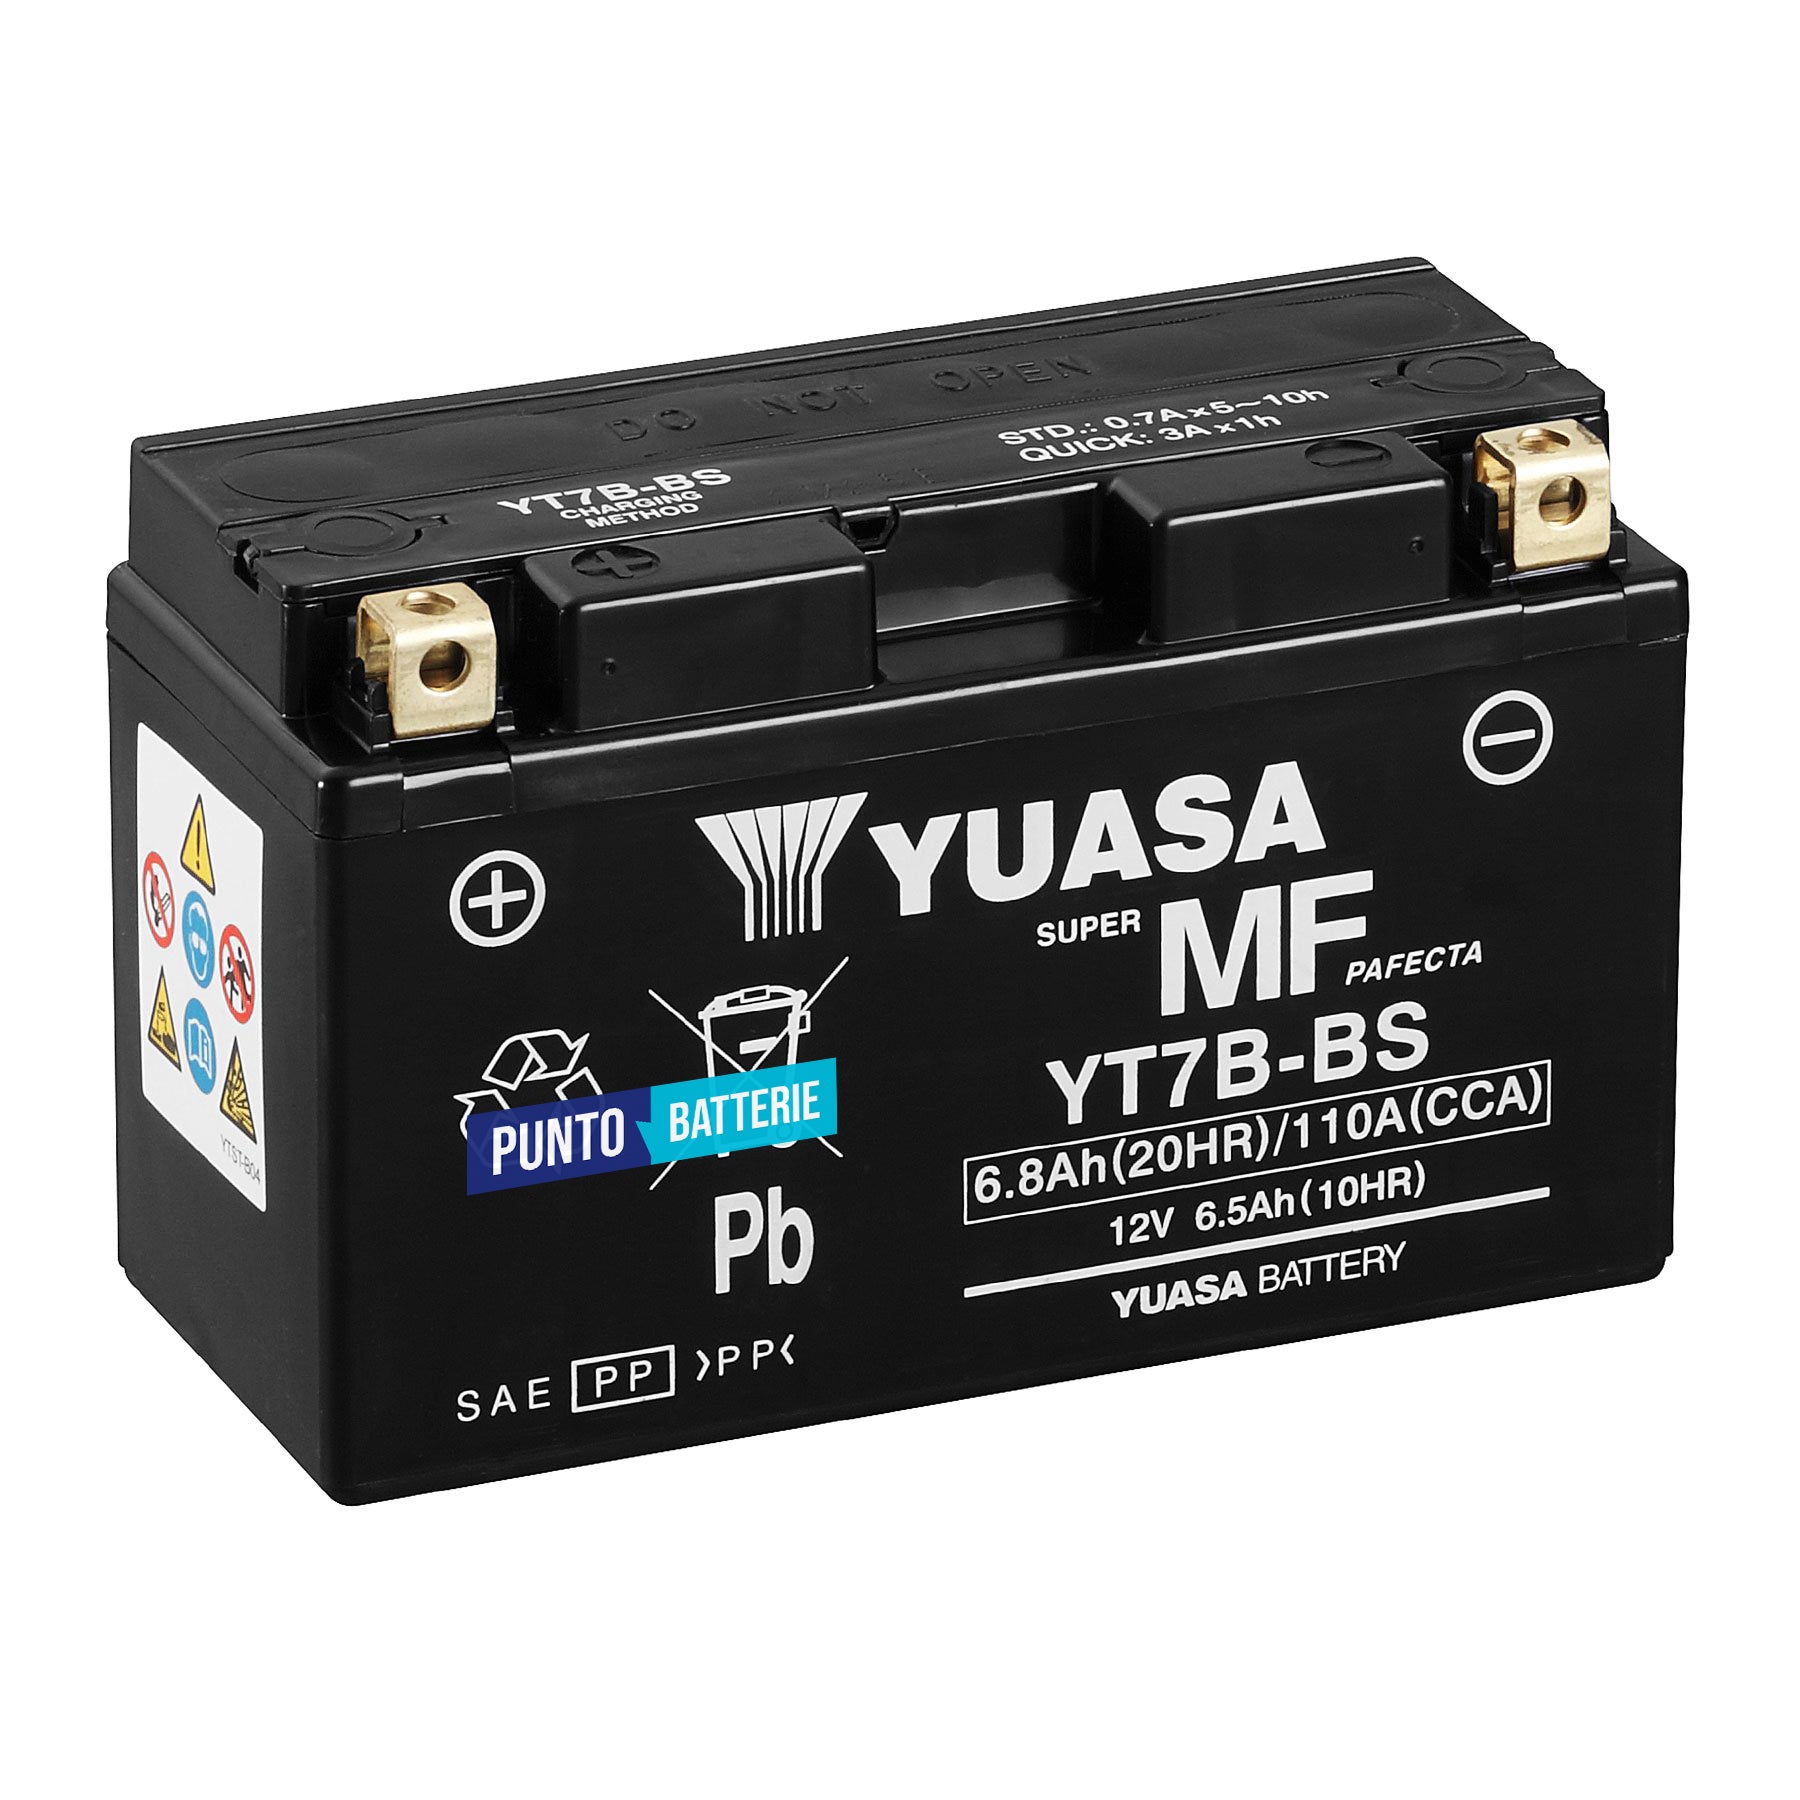 Batteria originale Yuasa YT YT7B-BS, dimensioni 150 x 65 x 93, polo positivo a sinistra, 12 volt, 6 amperora, 110 ampere. Batteria per moto, scooter e powersport.